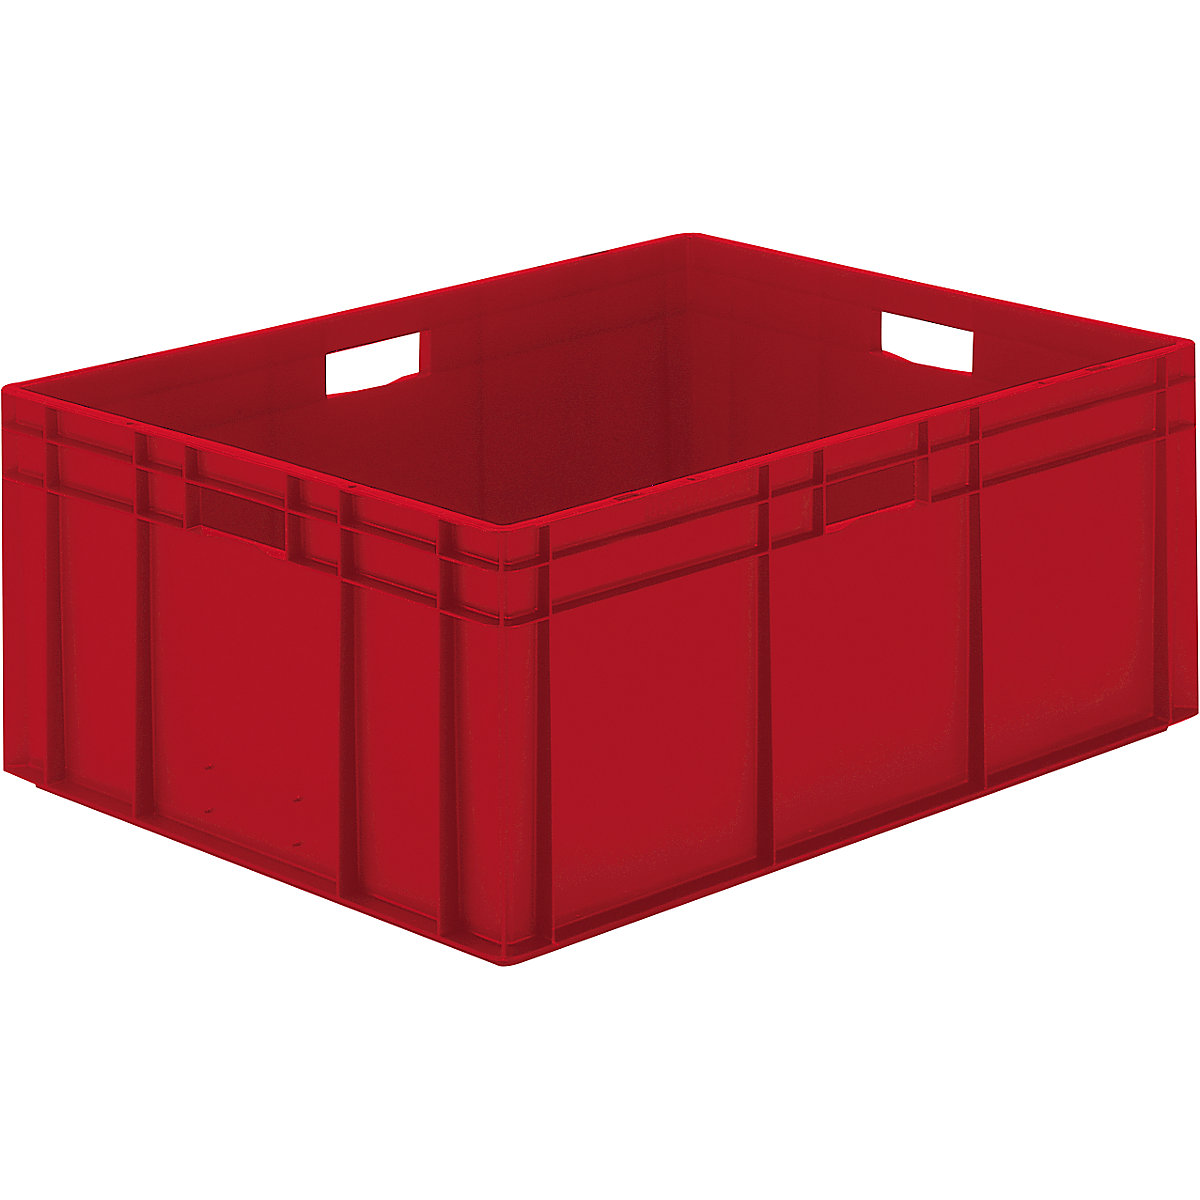 Euro-Format-Stapelbehälter, Wände und Boden geschlossen, LxBxH 800 x 600 x 320 mm, rot, VE 2 Stk-4